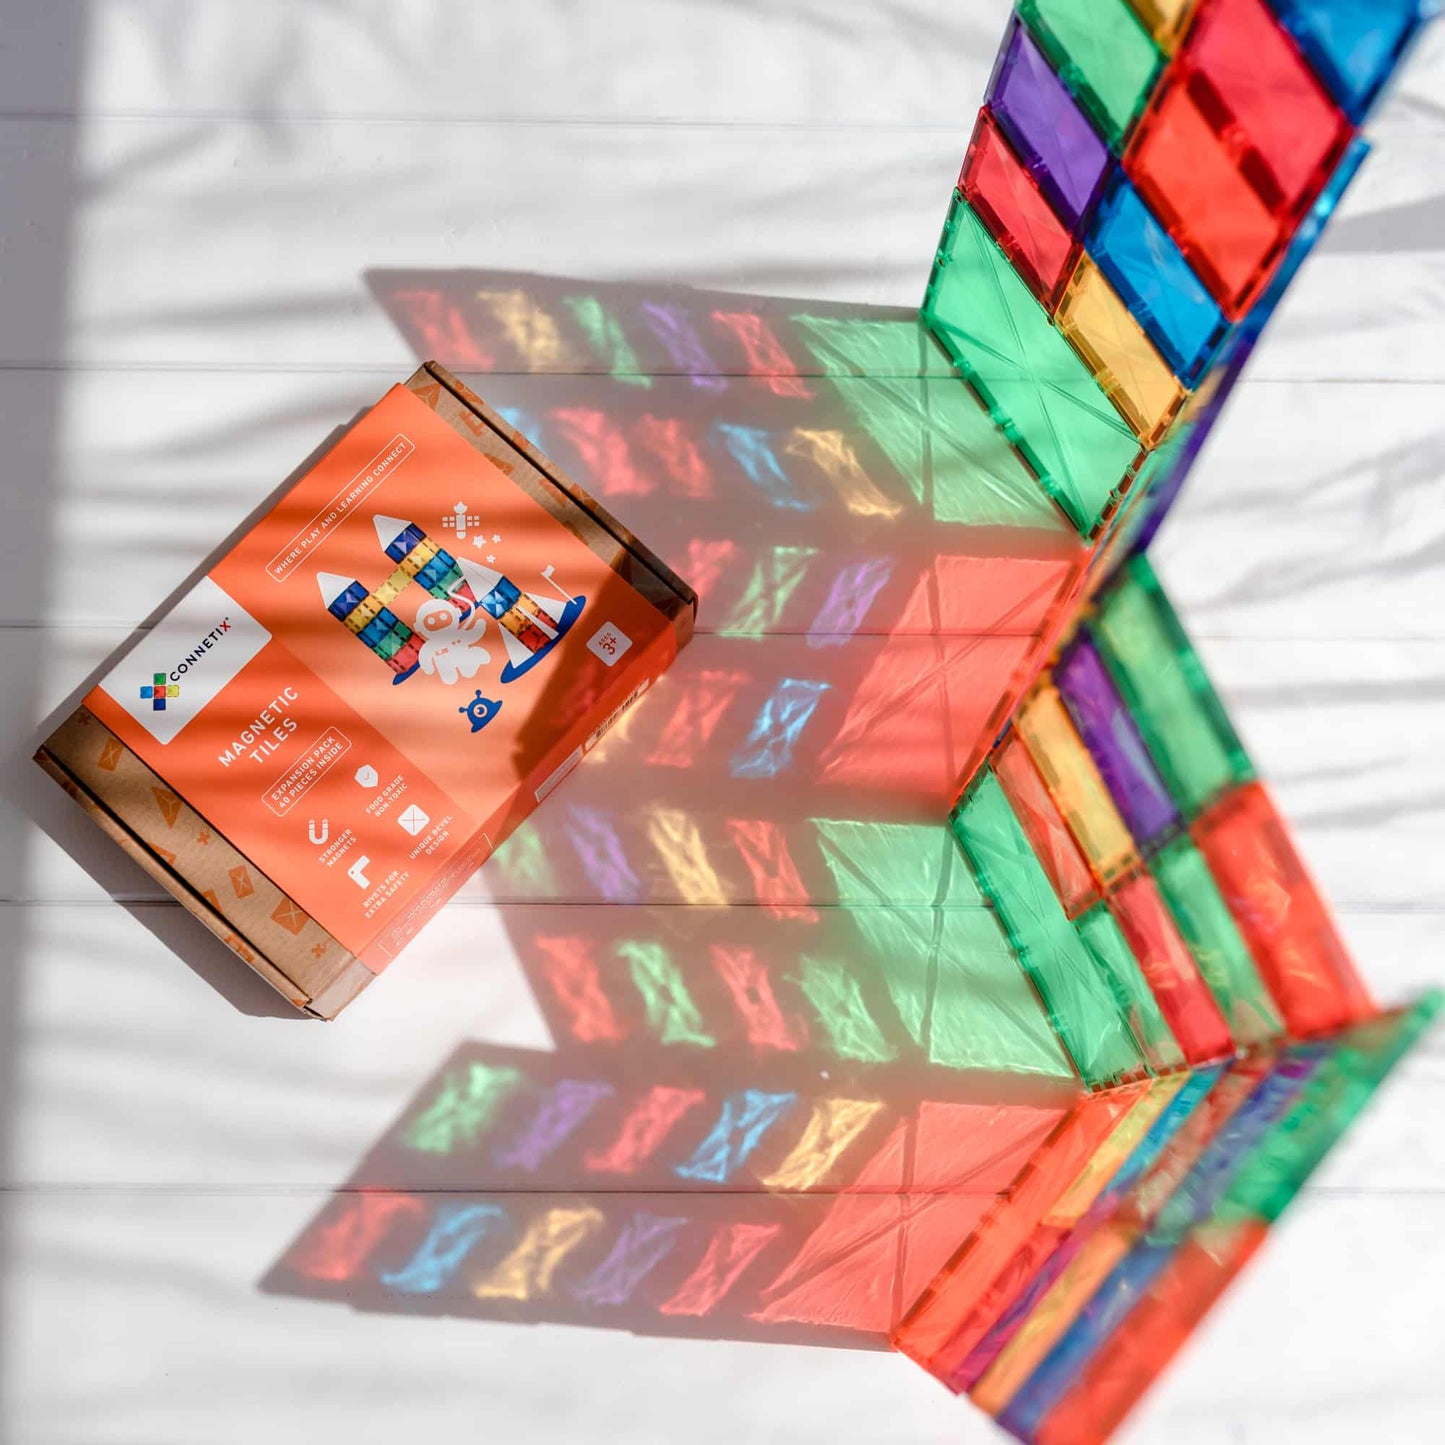 Connetix Tiles 40 Piece Rainbow Square Pack